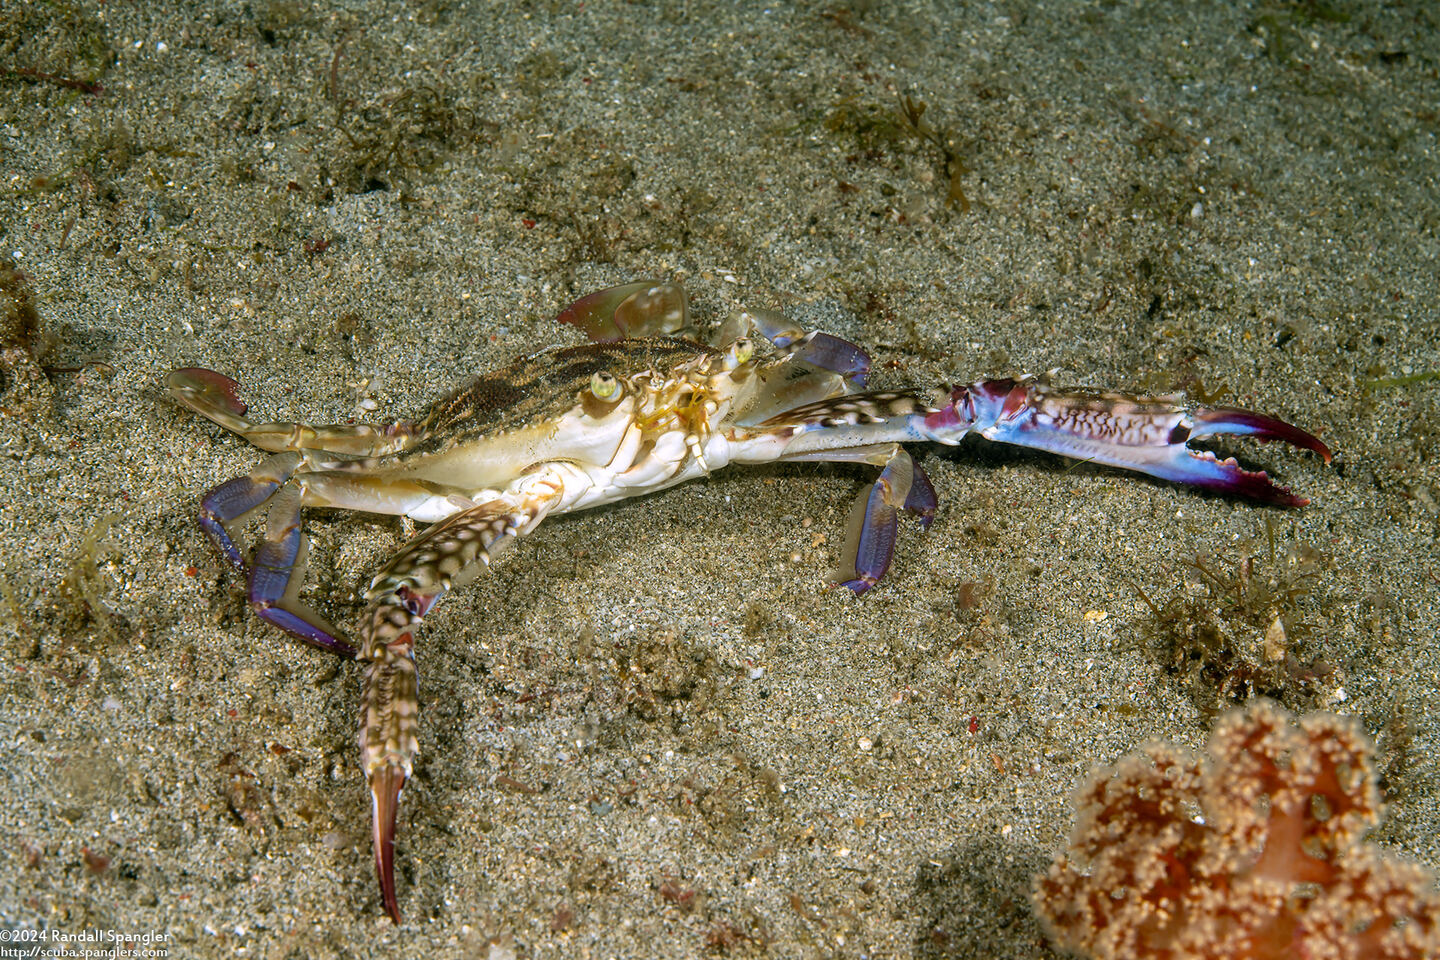 Portunus pelagicus (Blue Swimming Crab)